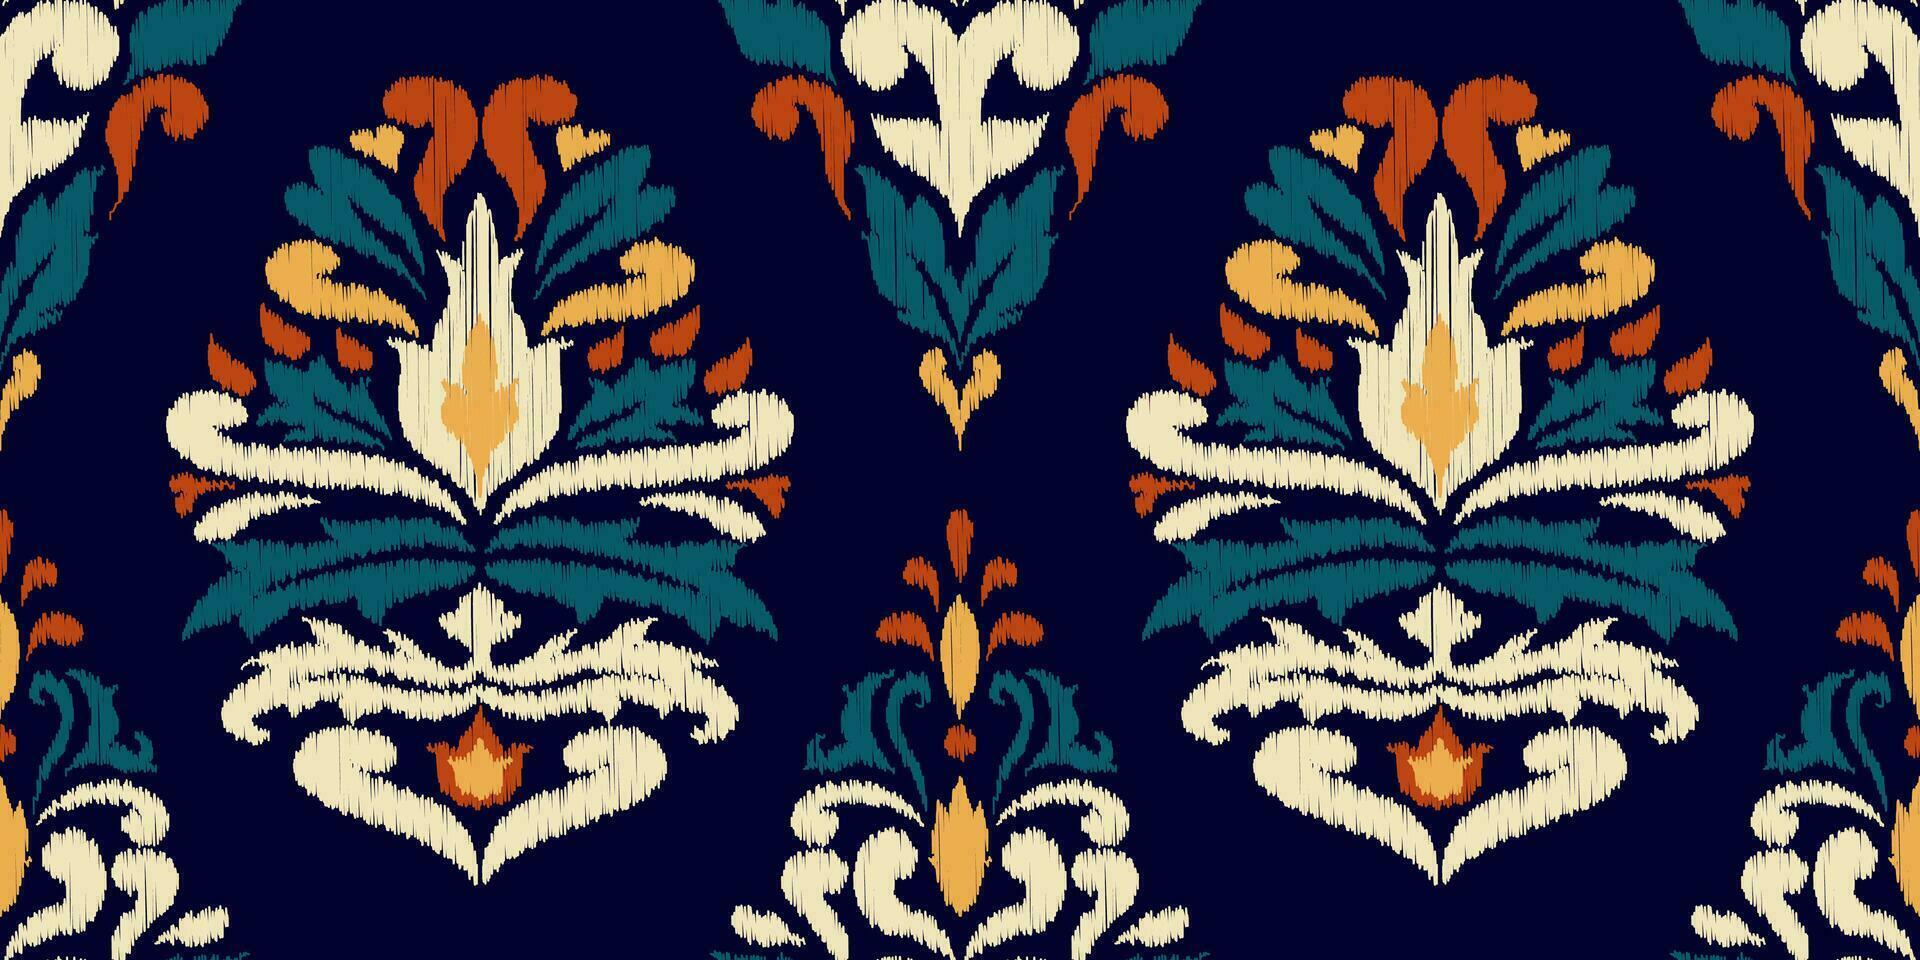 ikat etnisk orientalisk sömlös mönster traditionell. design för kläder, tyg, matta, tapeter, textur, inslagning vektor